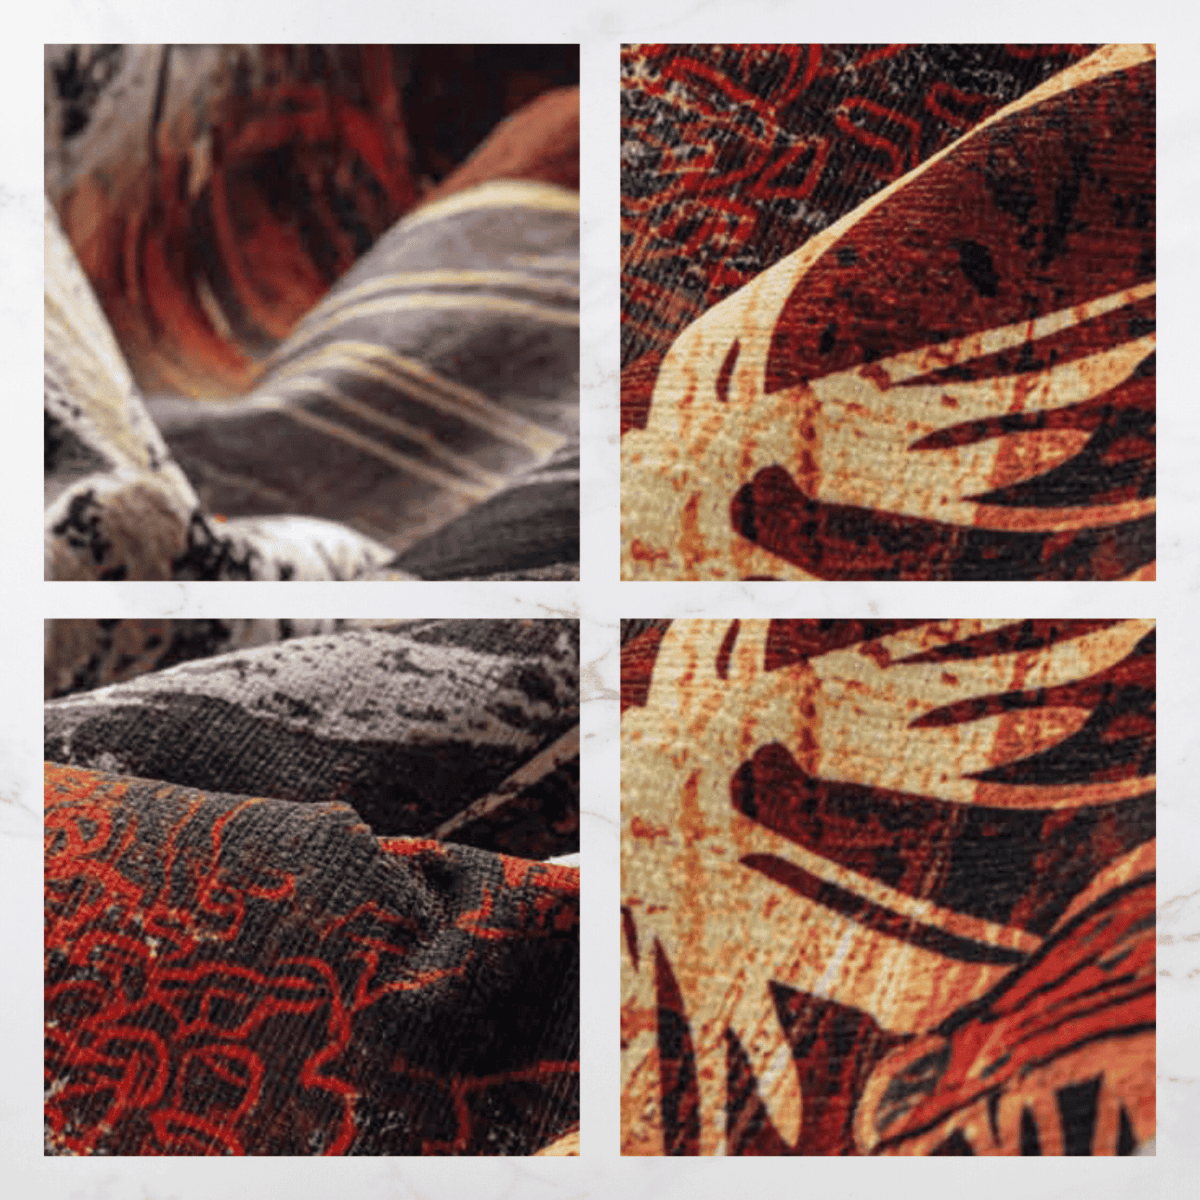 incisione-terra-tappeto-arredo-emozioni-artista-fiorato-rame-fiori-giganti-multicolor-marrone-moderno-dettagli